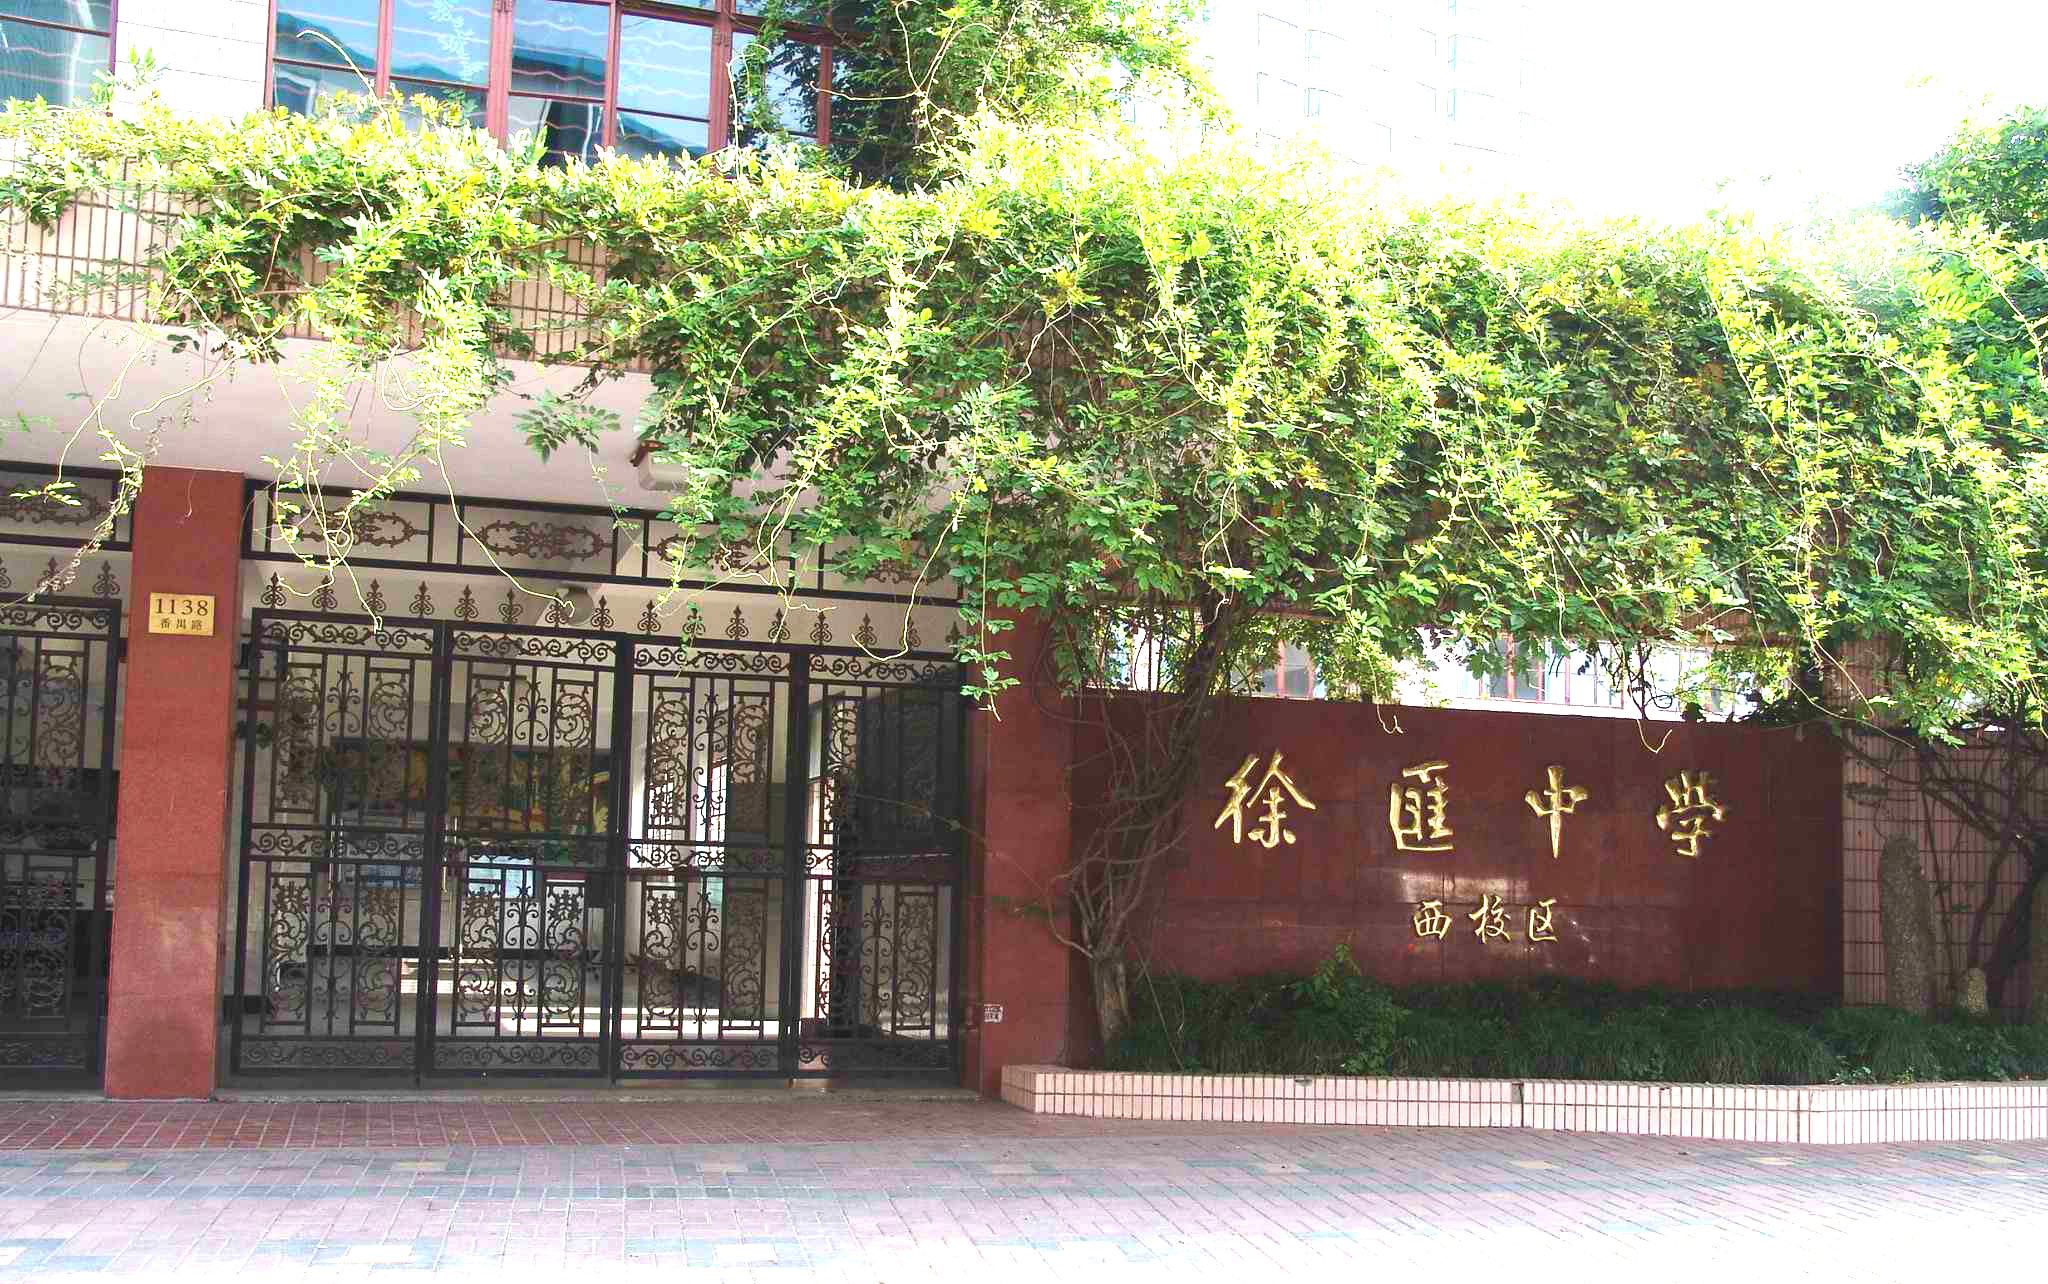 上海市徐汇中学是一所历史悠久,环境优美,教学设施先进,师资力量雄厚